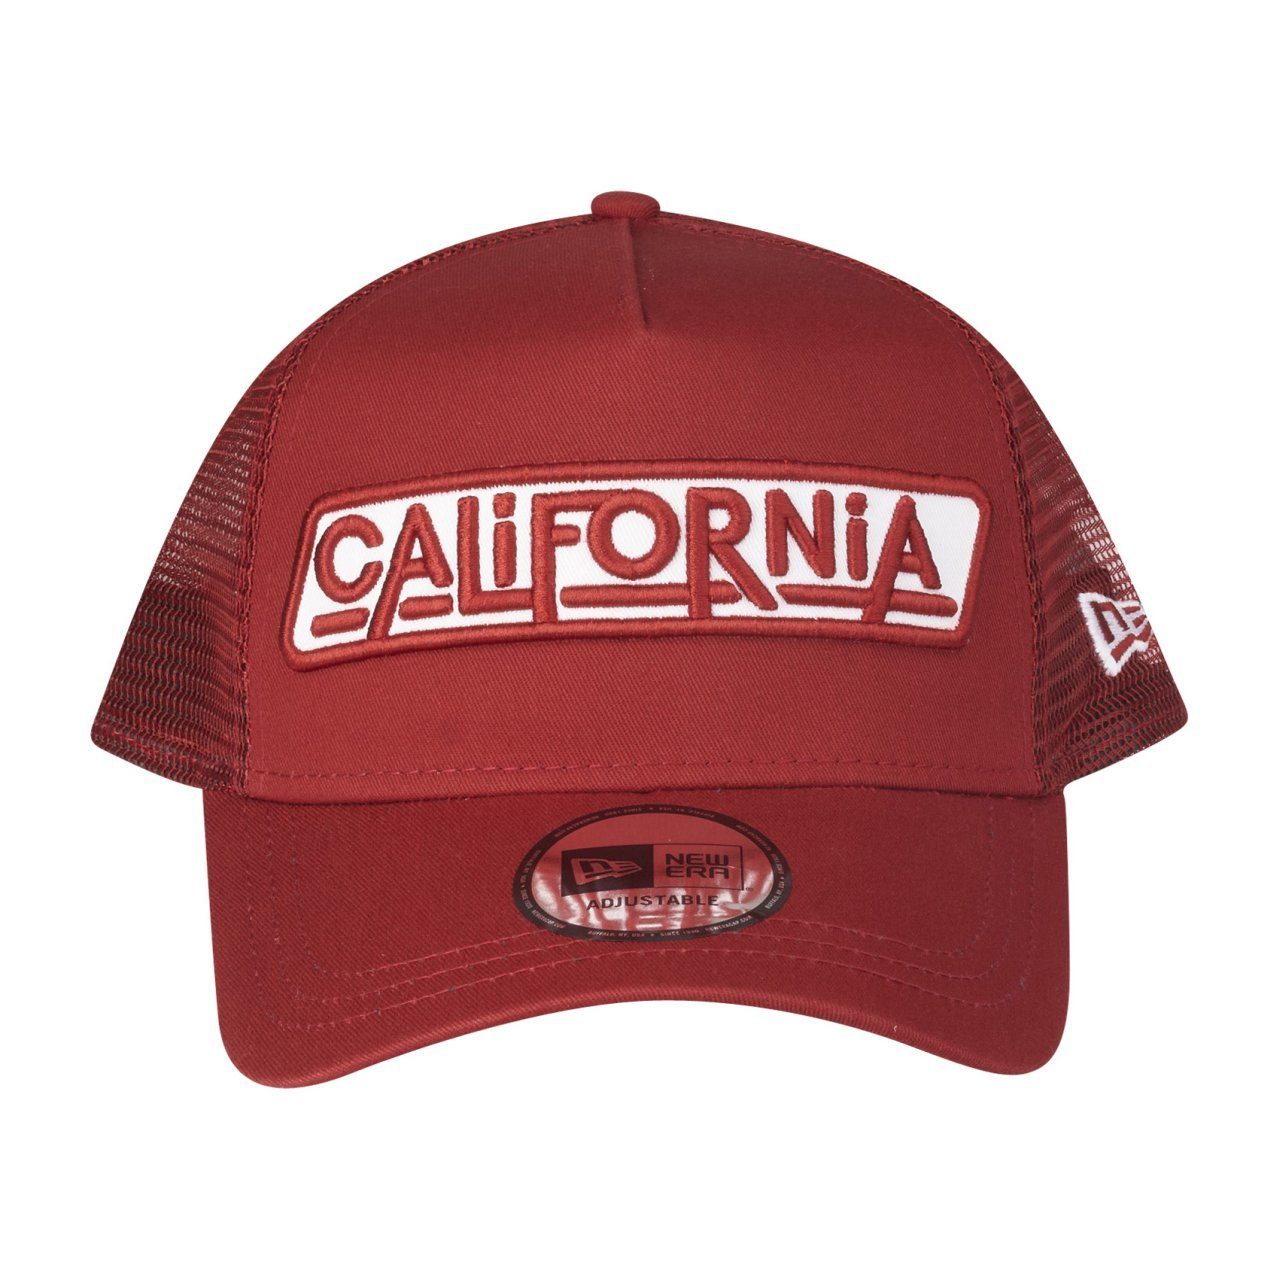 USA California Trucker Trucker Cap New Era AFrame